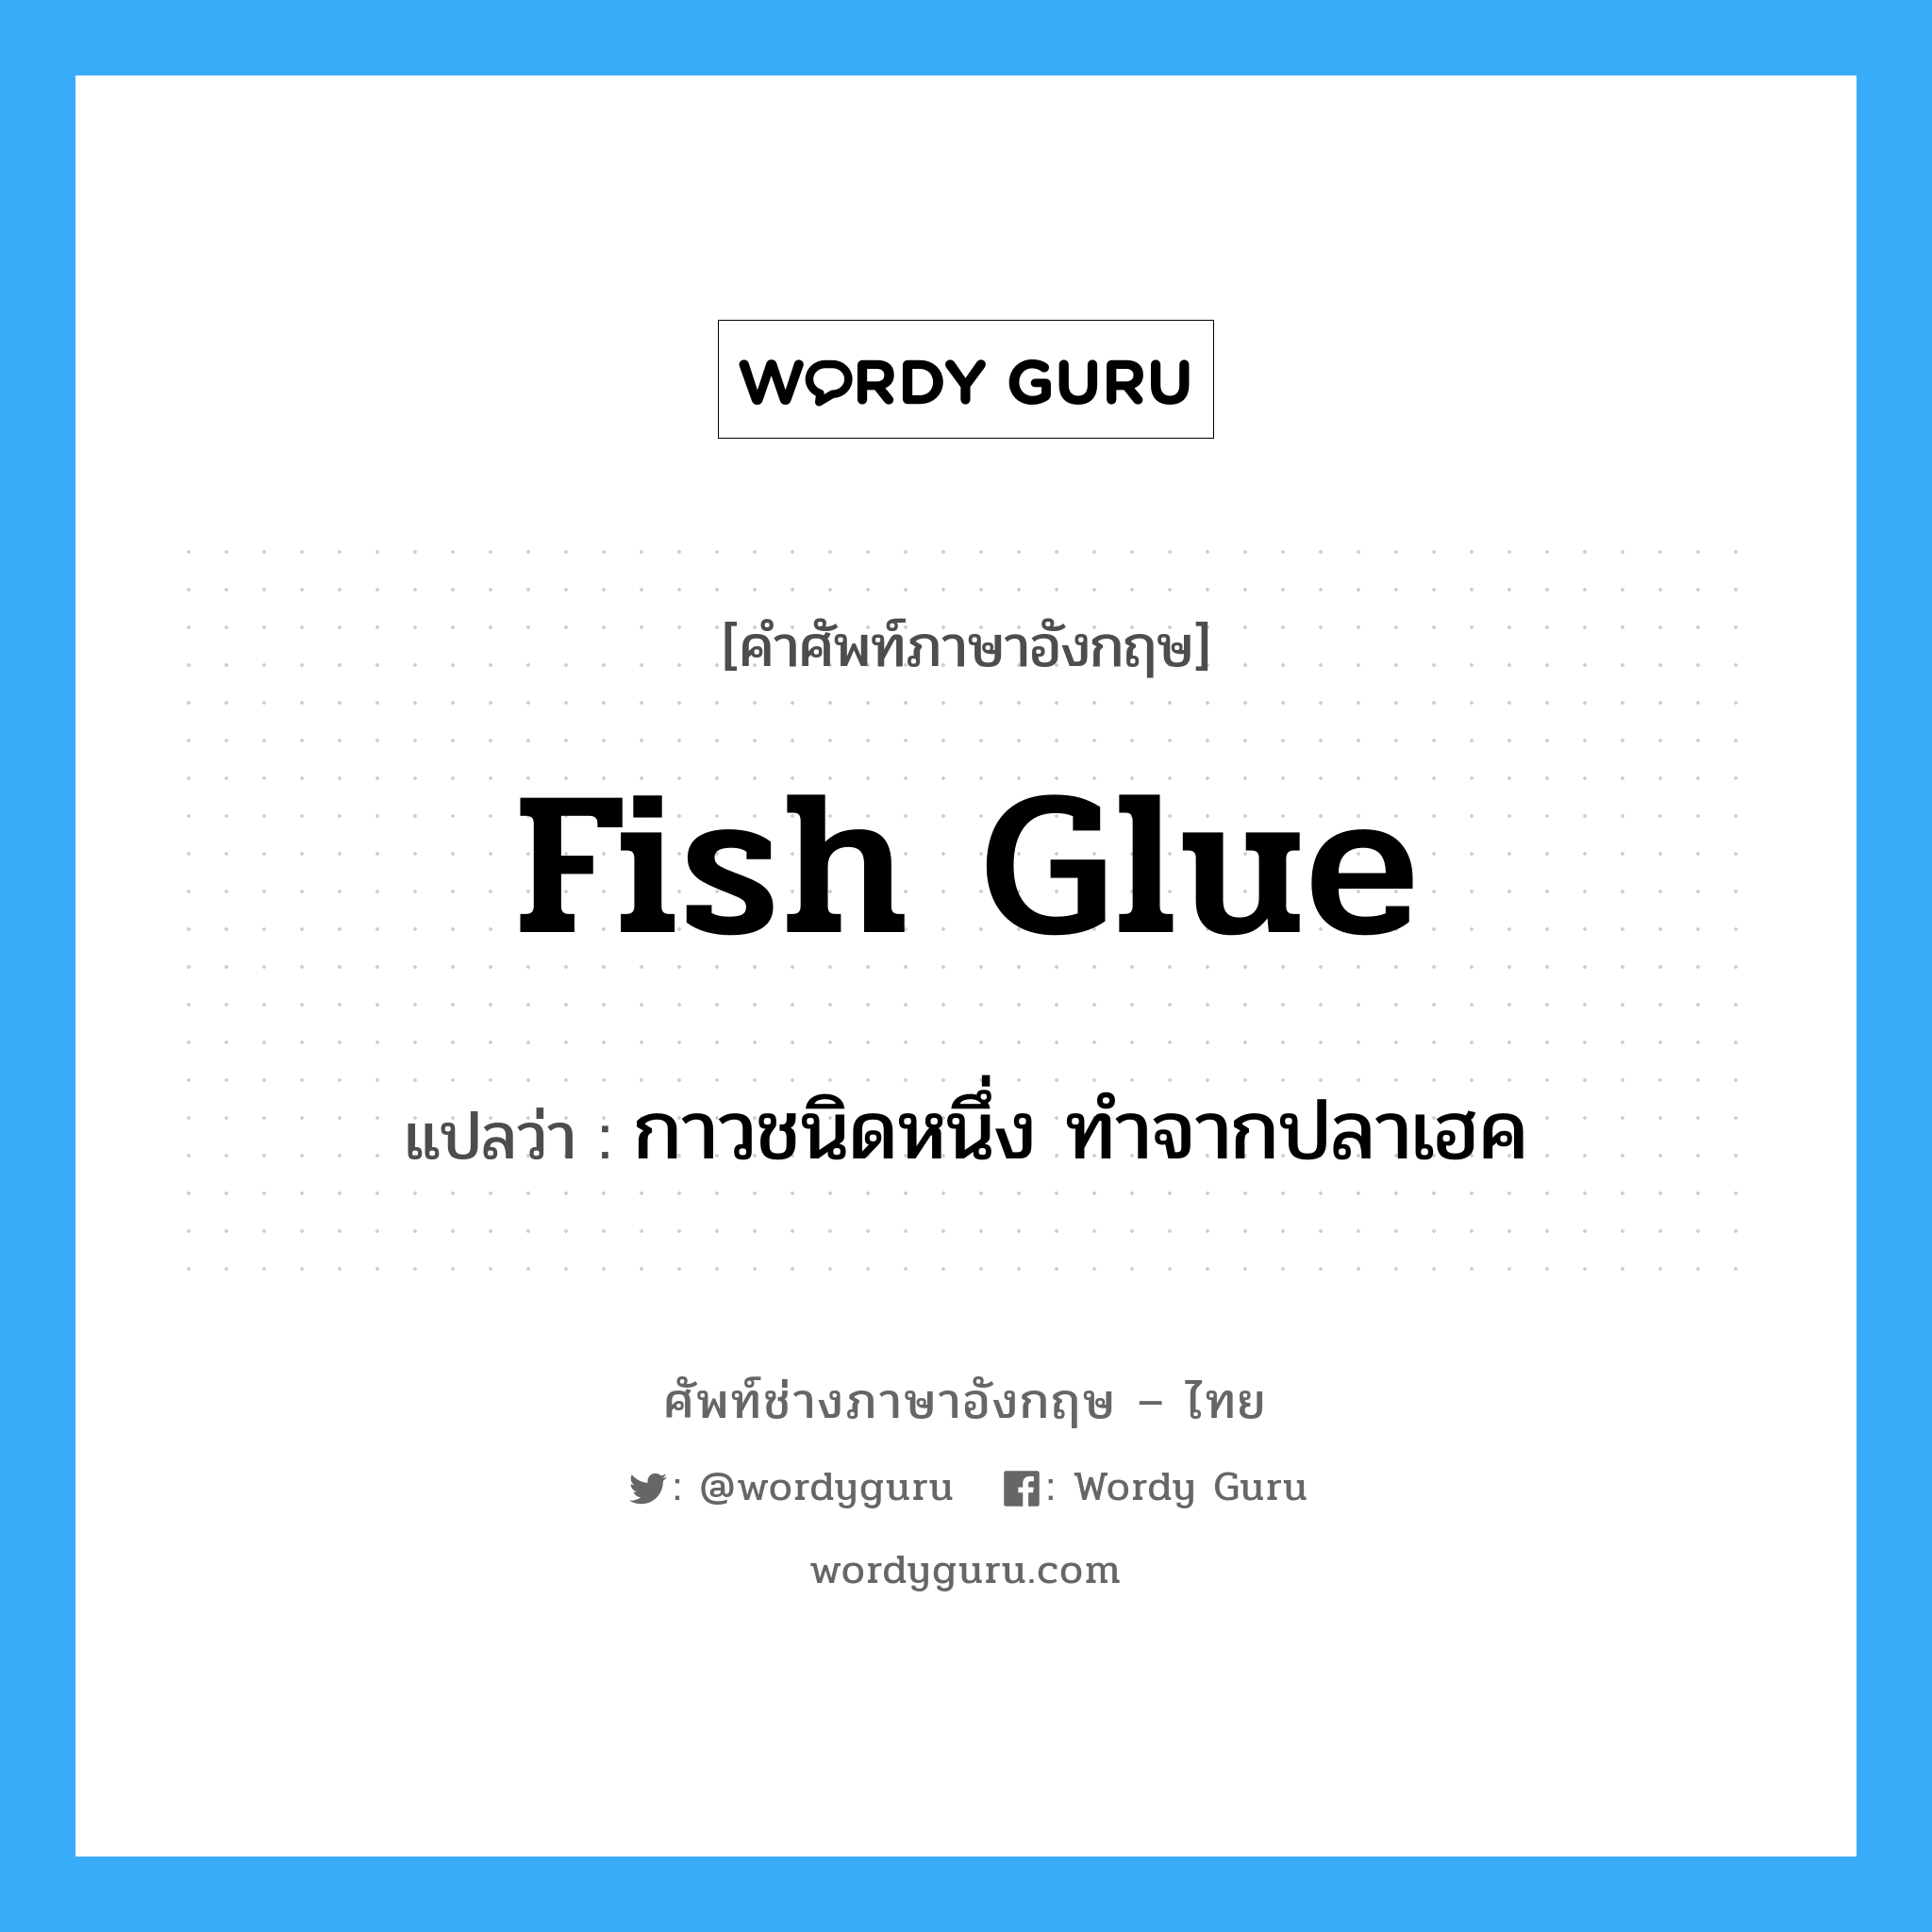 กาวชนิดหนึ่ง ทำจากปลาเฮค ภาษาอังกฤษ?, คำศัพท์ช่างภาษาอังกฤษ - ไทย กาวชนิดหนึ่ง ทำจากปลาเฮค คำศัพท์ภาษาอังกฤษ กาวชนิดหนึ่ง ทำจากปลาเฮค แปลว่า fish glue